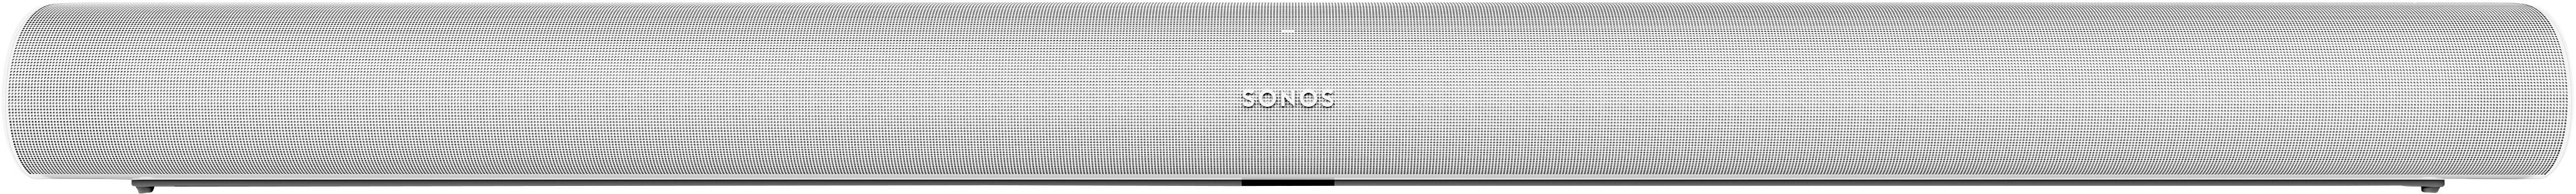 SONOS Arc Multiroom Lautsprecher Soundbar Air-Play, WLAN Amazon Alexa direkt integriert, Google